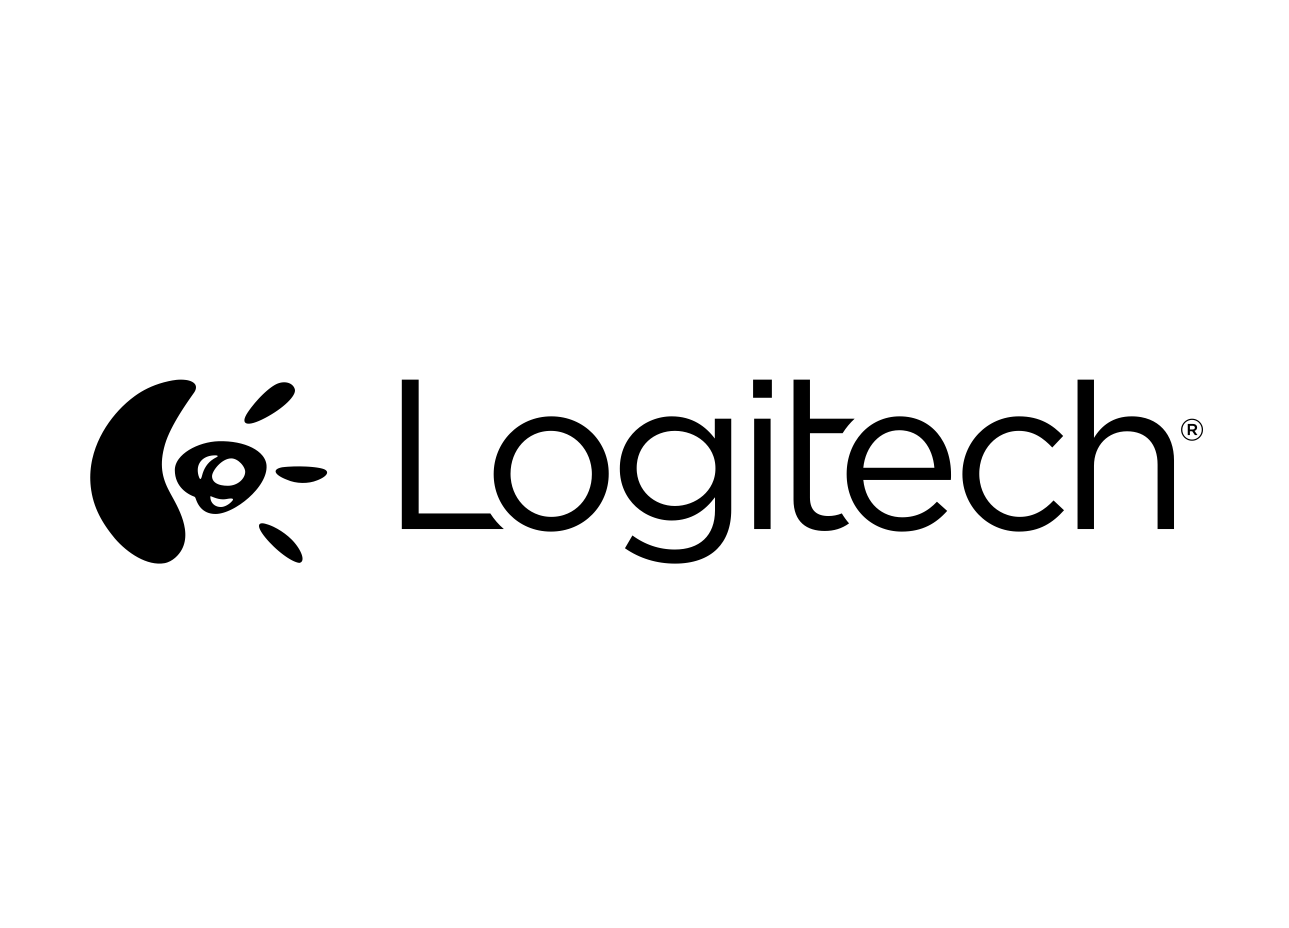 Logitech Backgrounds, Compatible - PC, Mobile, Gadgets| 1289x928 px